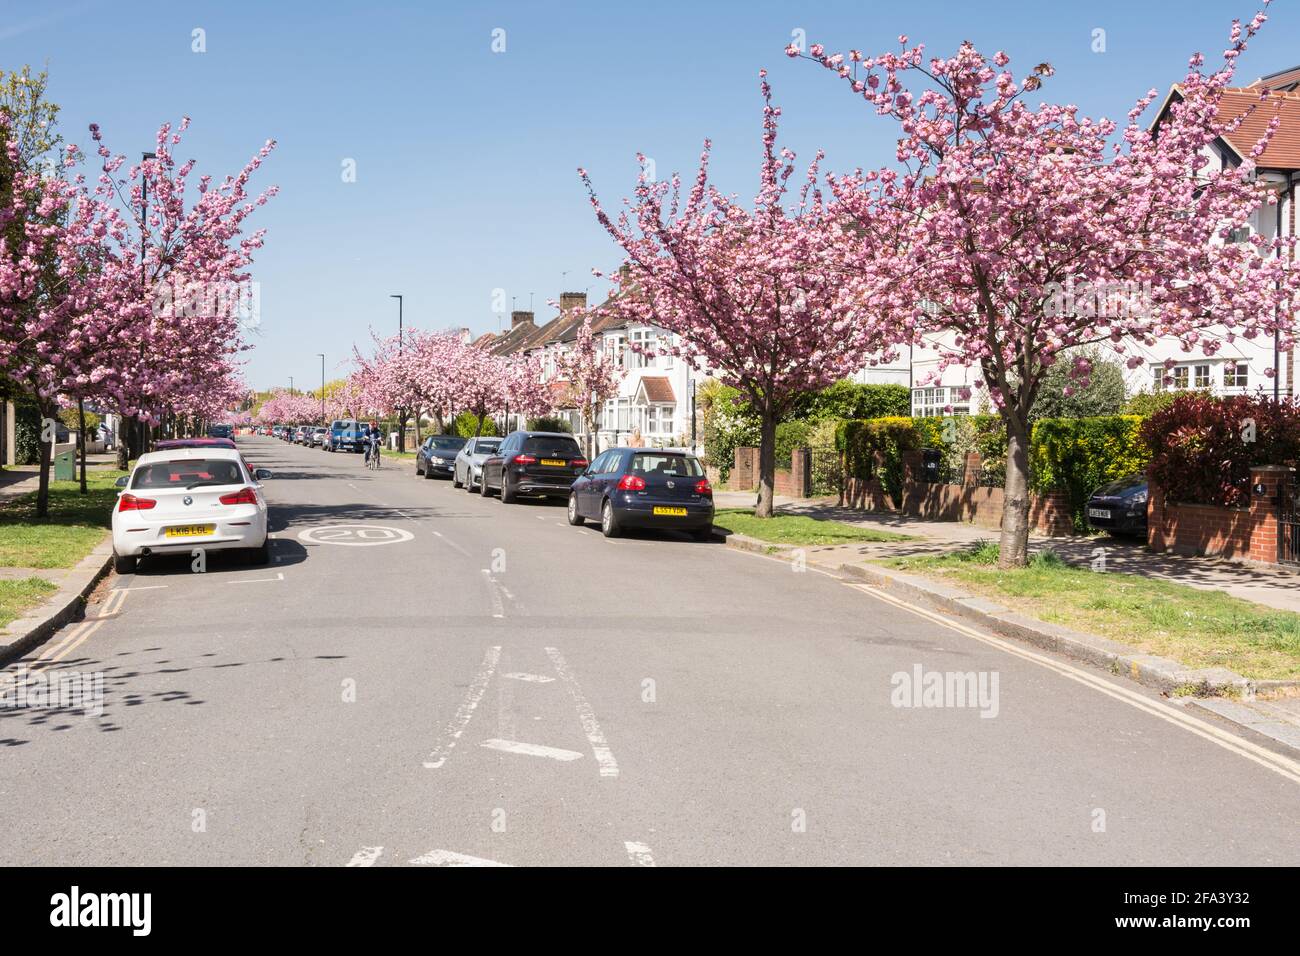 Pink cherry blossom Sakura trees (Prunus serrulata) on Staveley Road in Chiswick, west London, UK Stock Photo